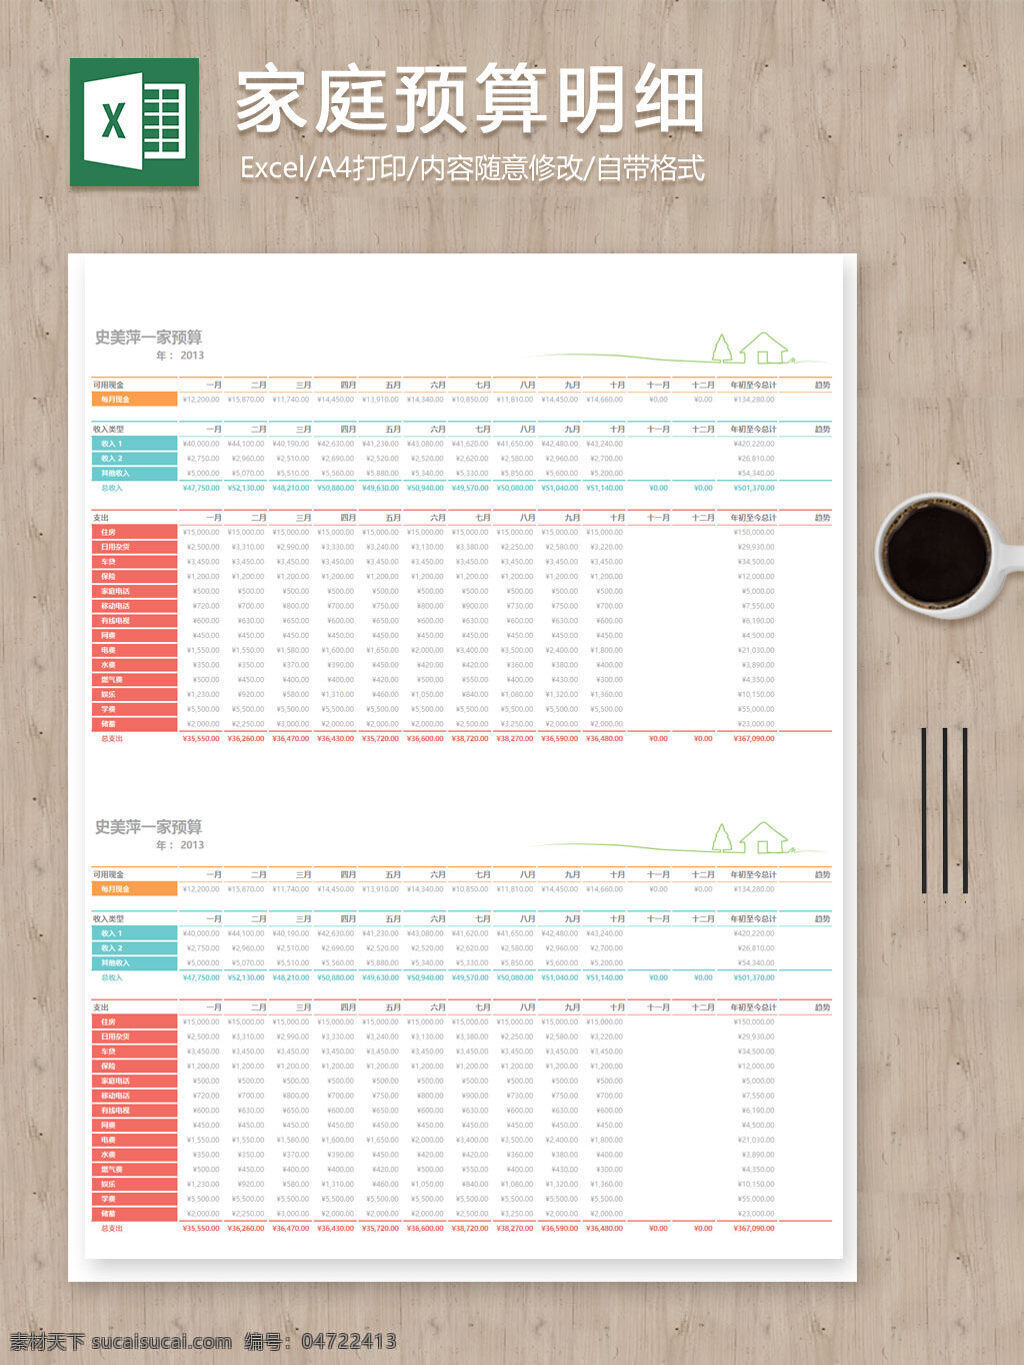 家庭 预算 收支 记录 明细 excel 表 表格 表格模板 表格设计 数据 图表 预算明细